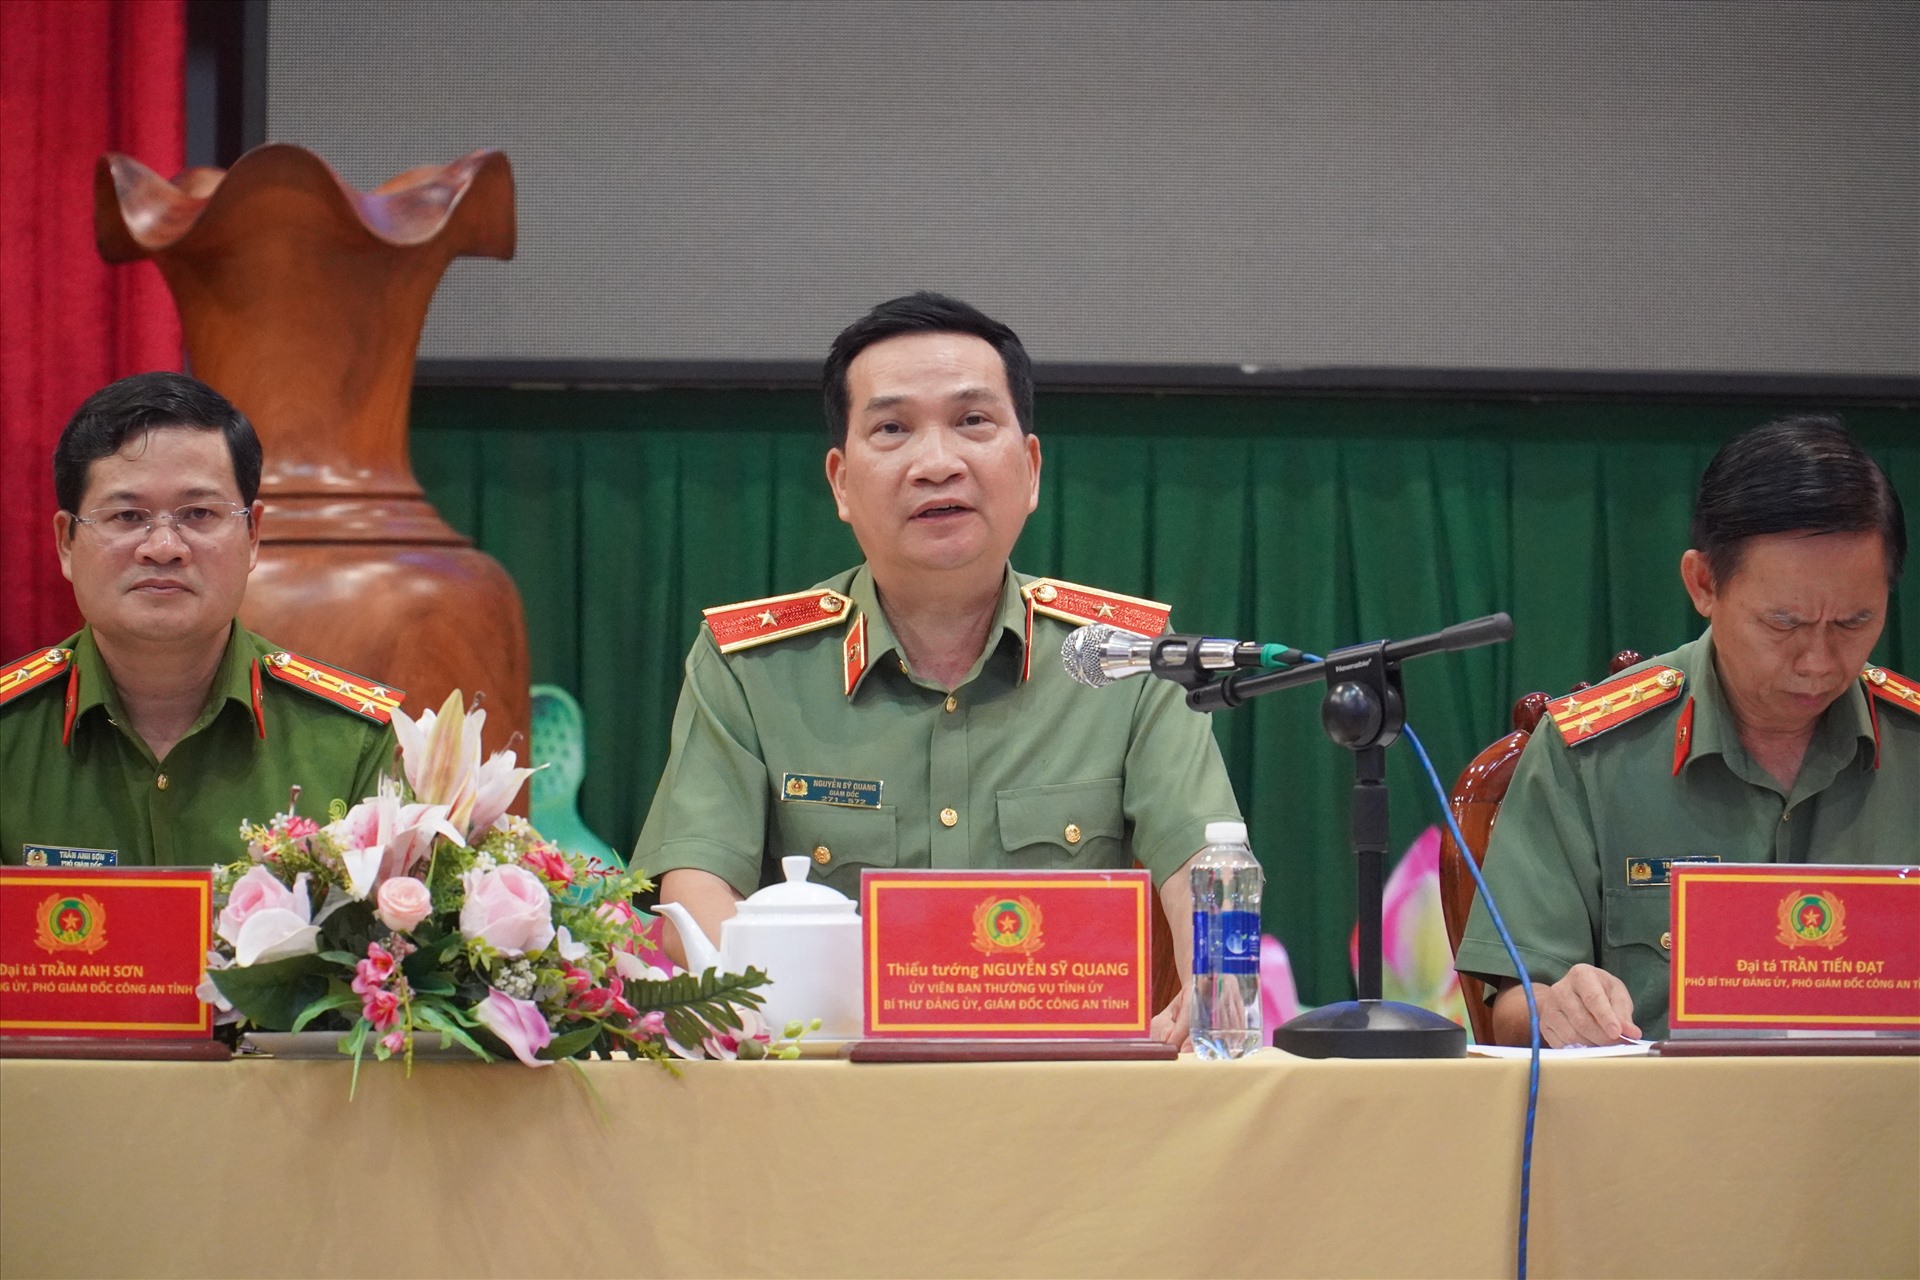 Thiếu tướng Nguyễn Sỹ Quang phát biểu tại hội nghị. Ảnh: Hà Anh Chiến